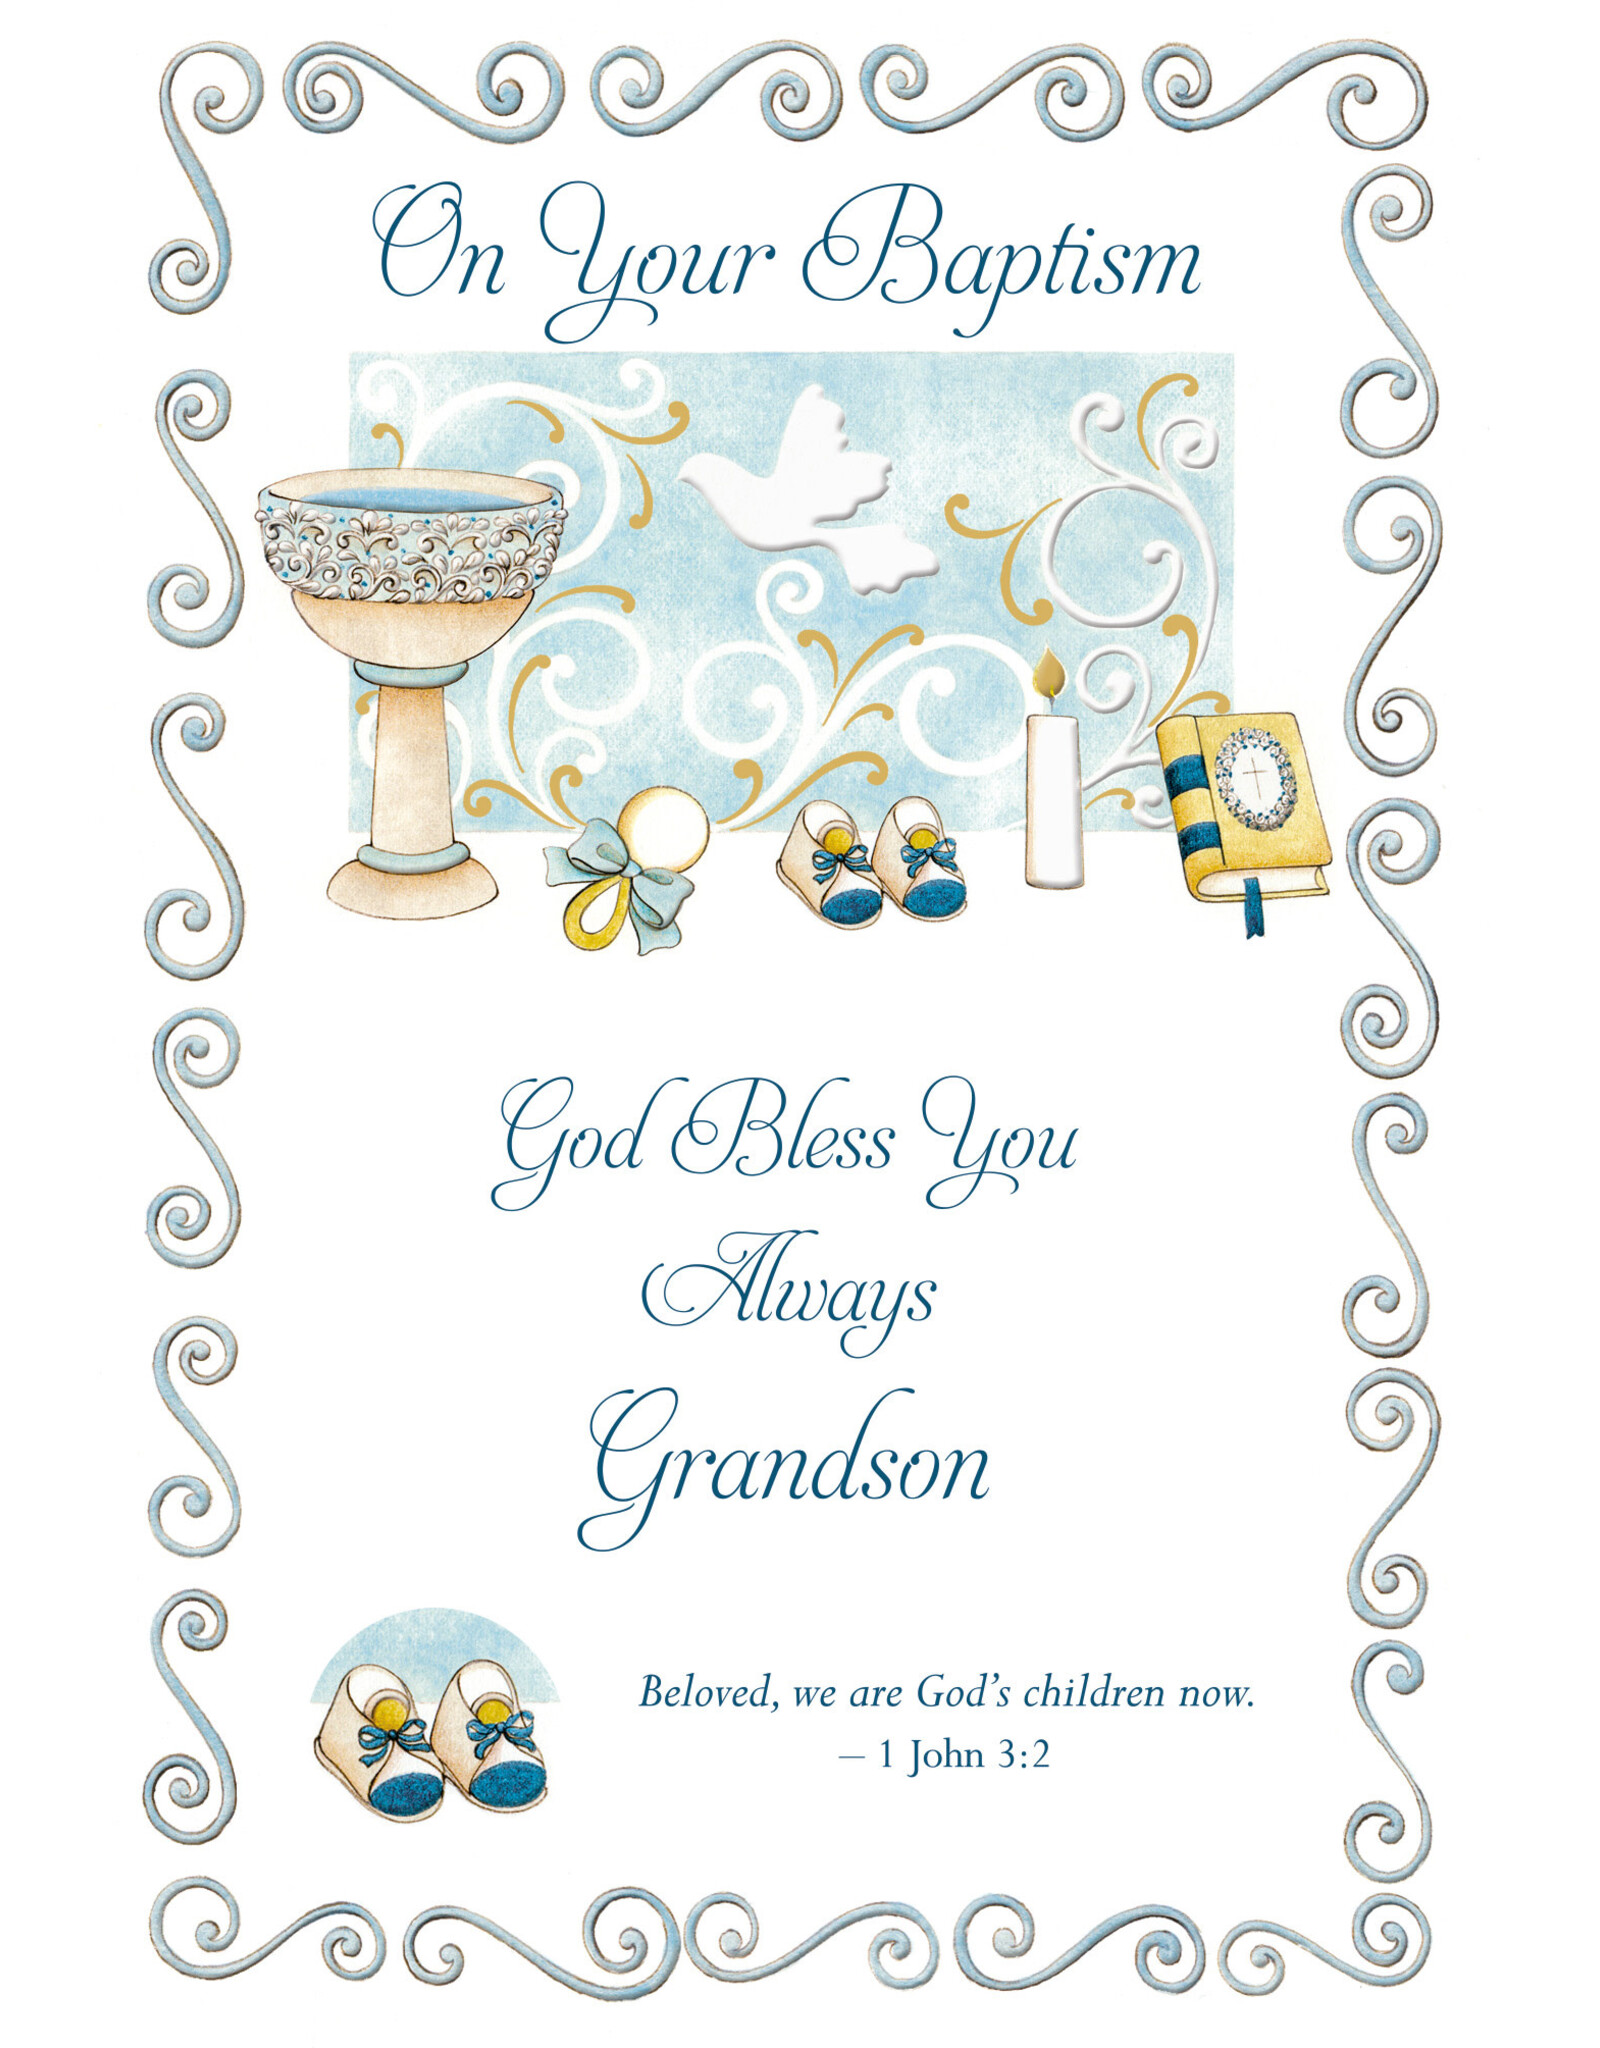 Malhame Regina Card - Baptism (Grandson), Blessings Always